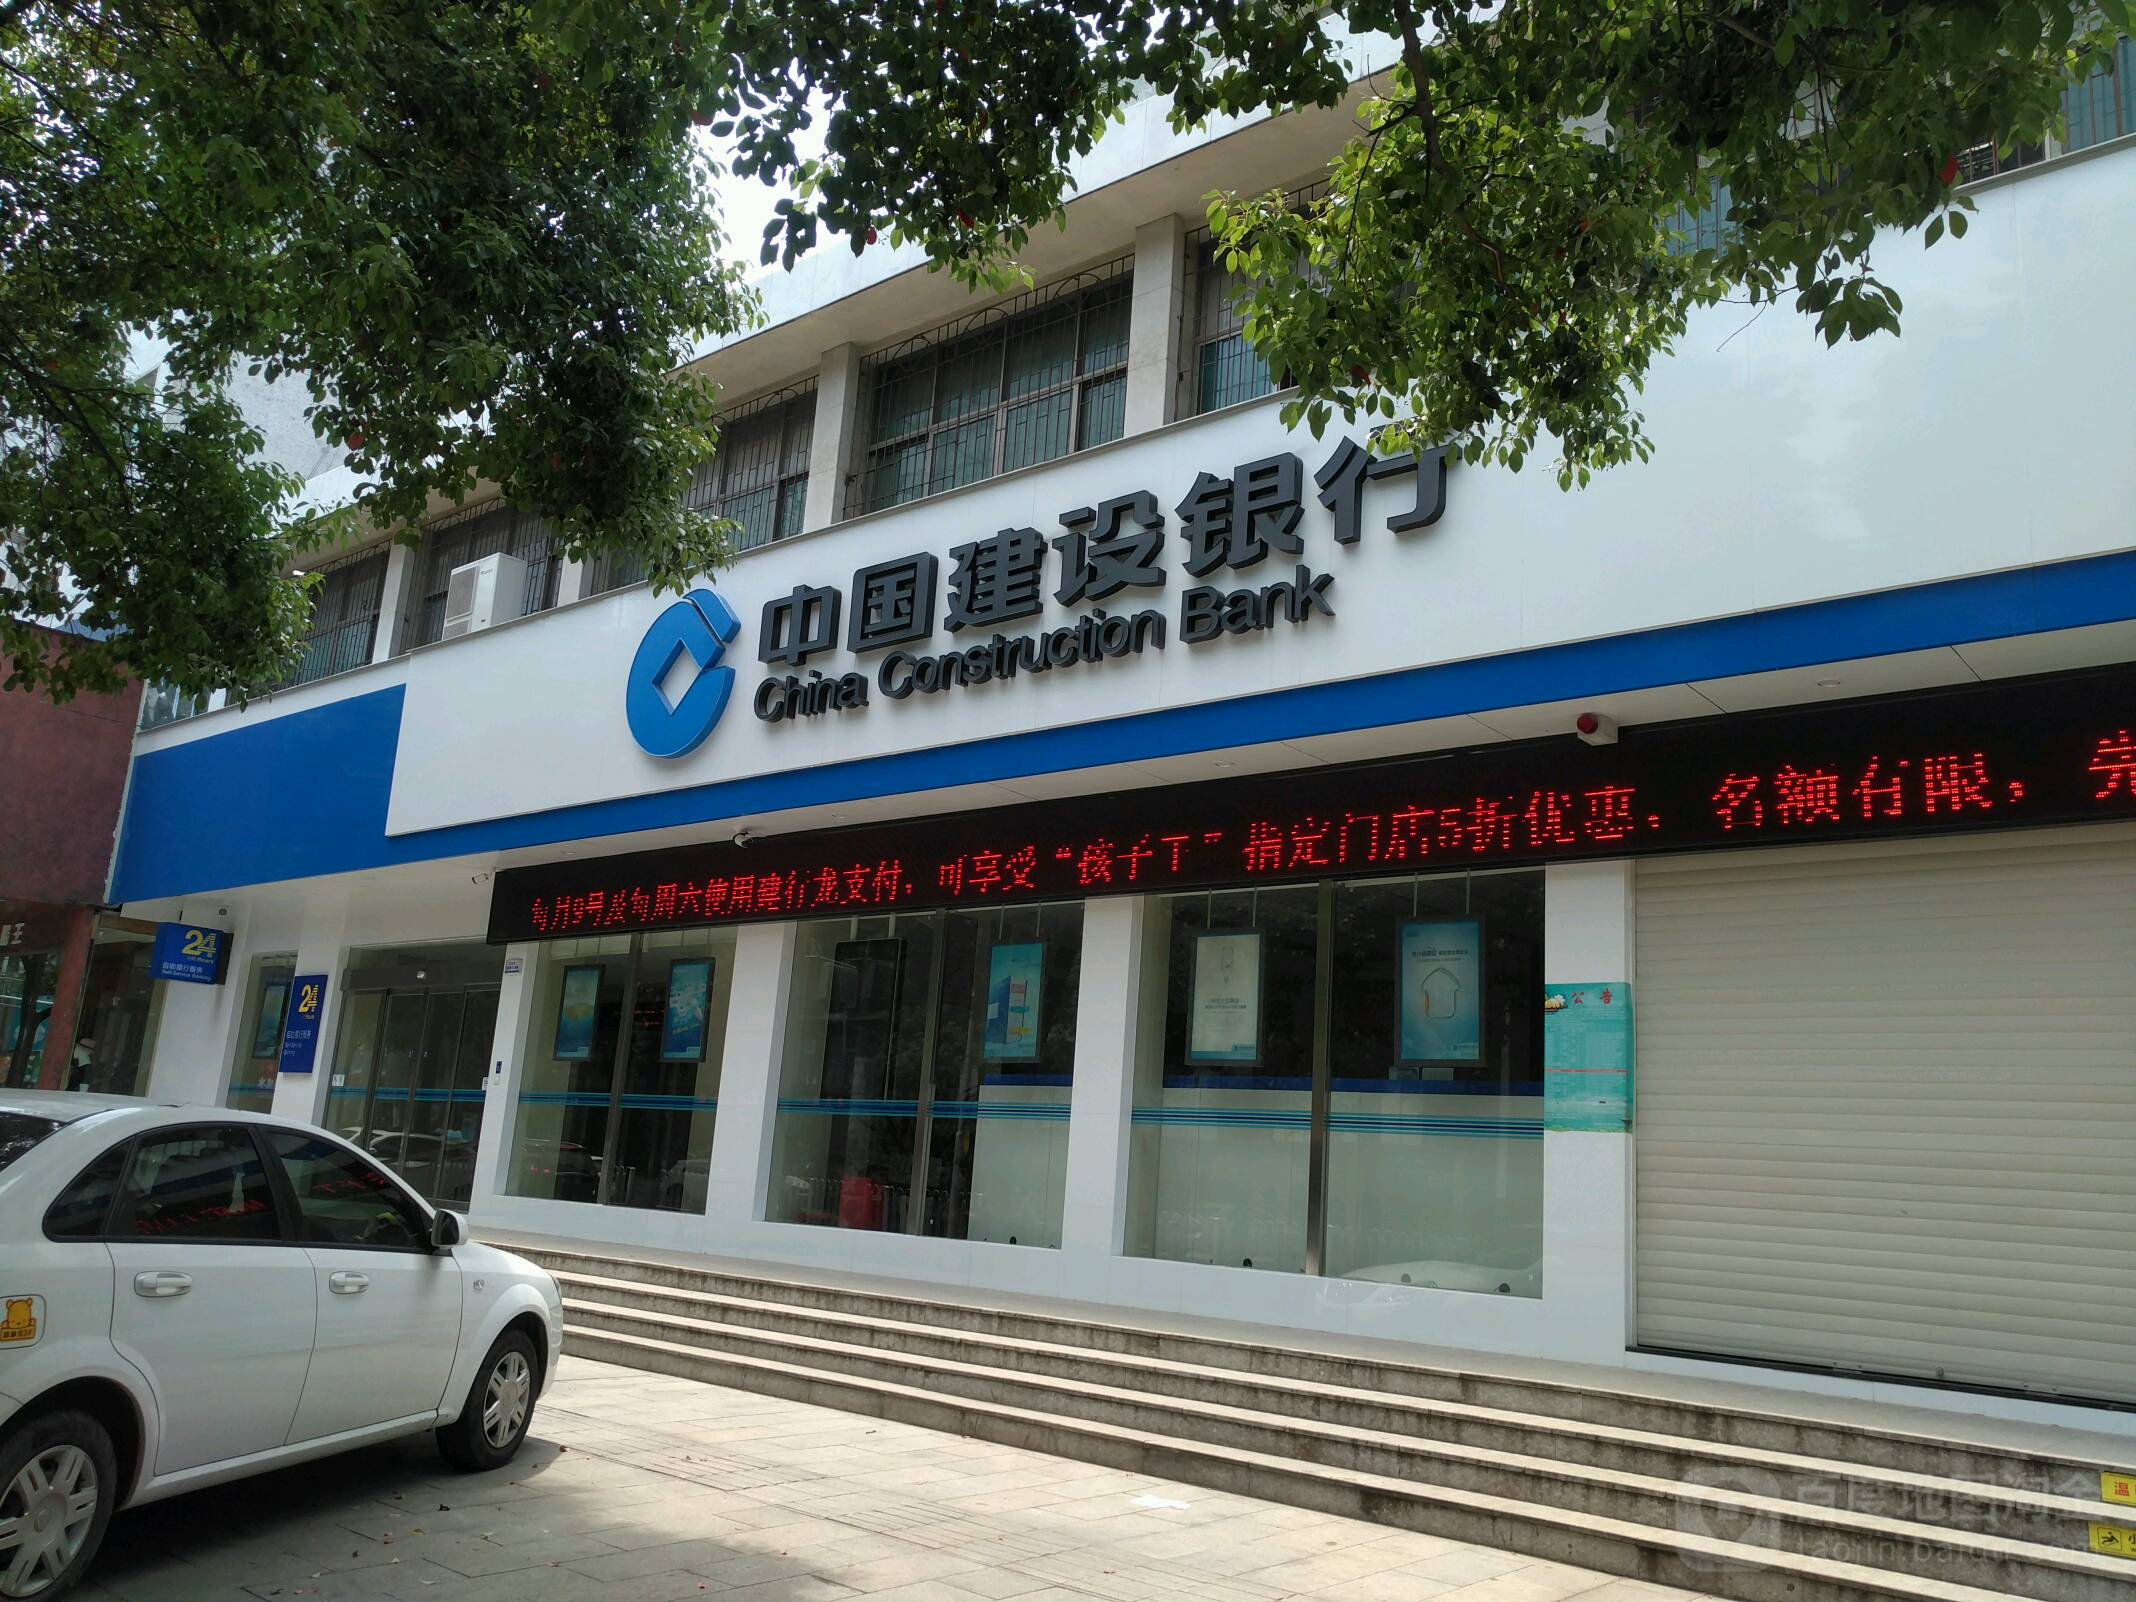 中國建設銀行(沅江瓊湖路支行)